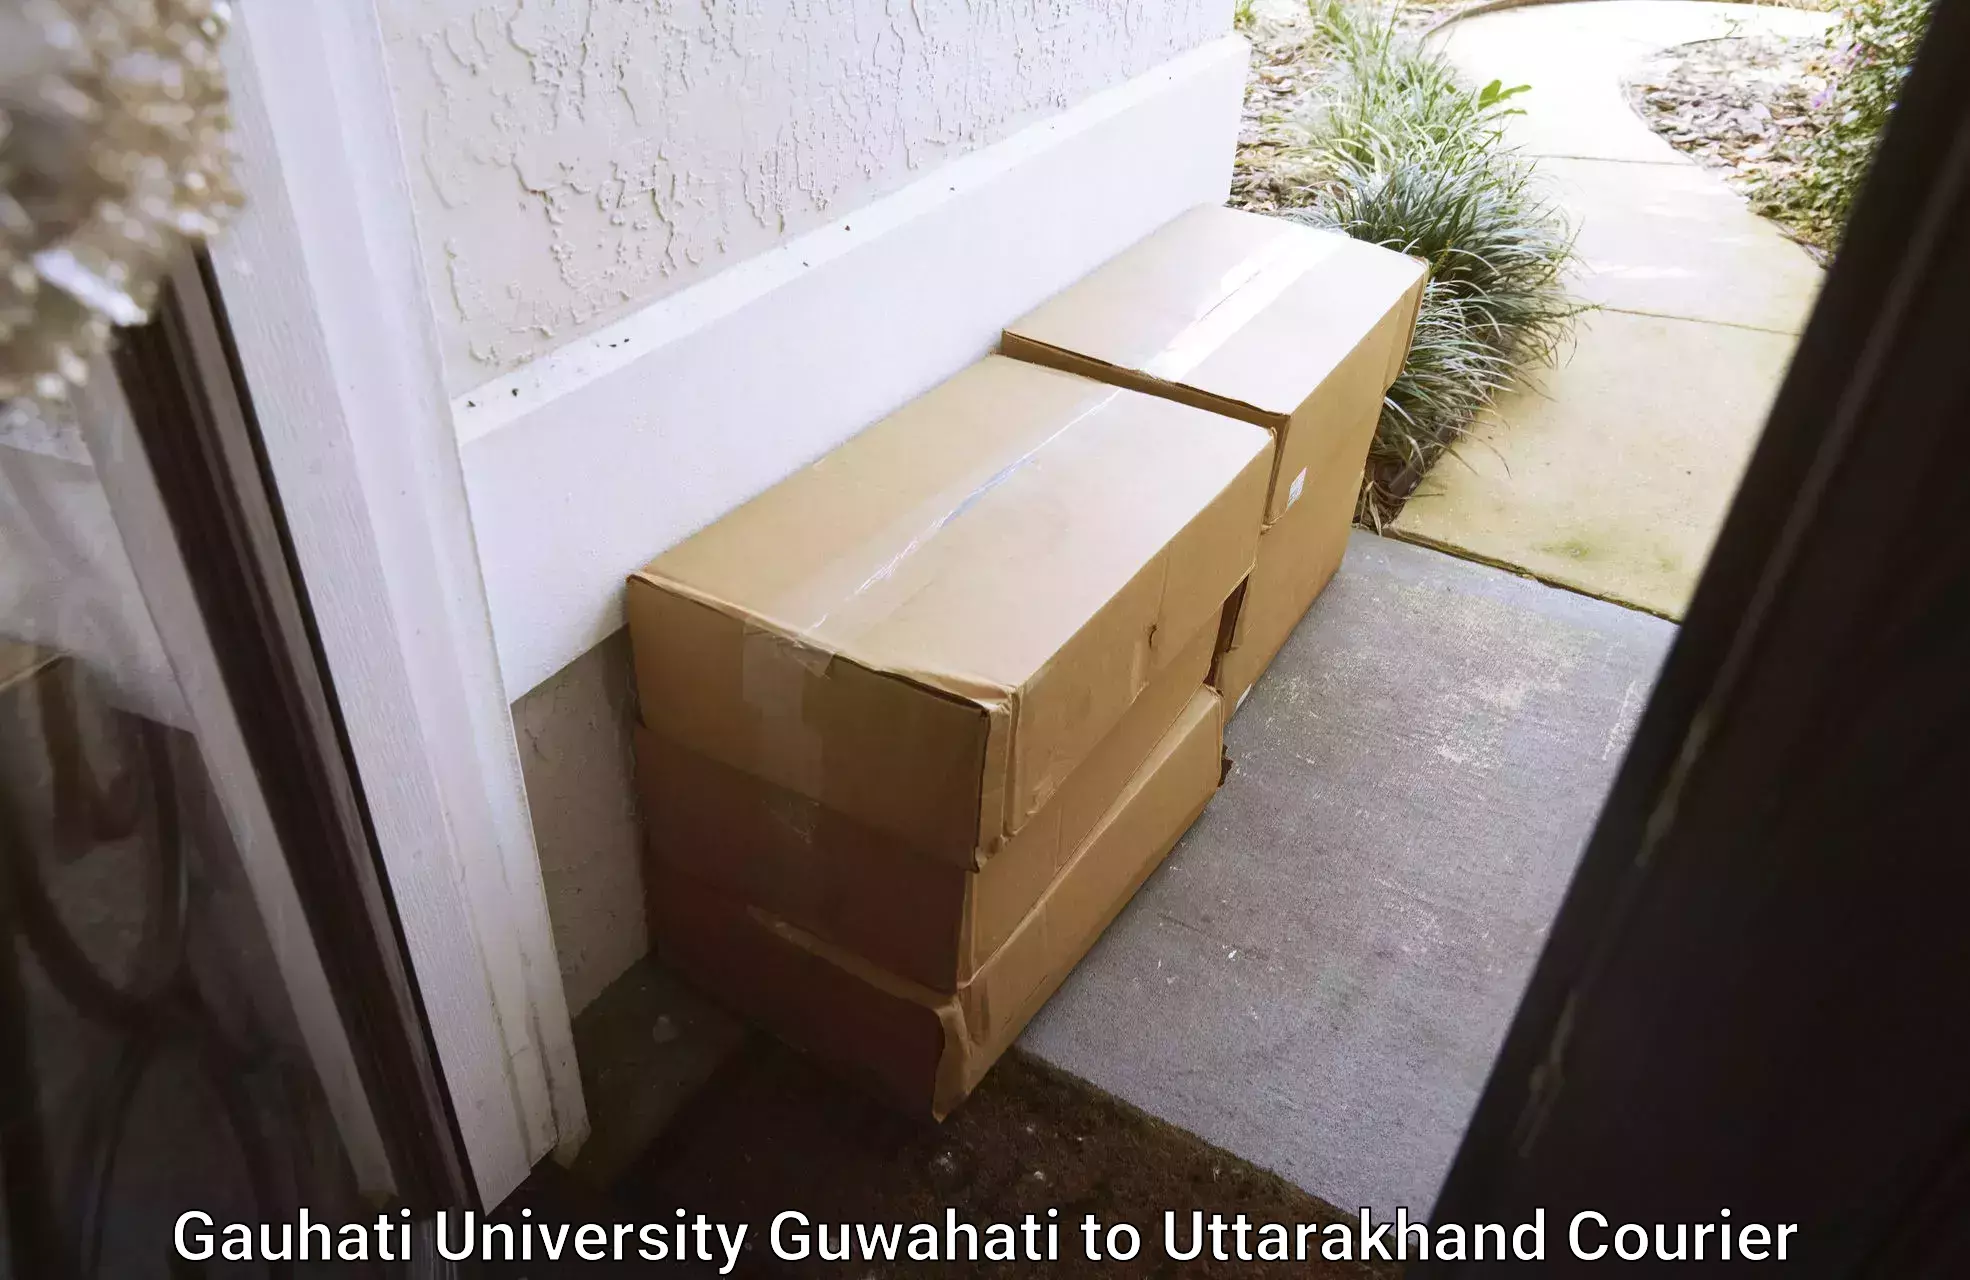 Ground shipping Gauhati University Guwahati to Uttarakhand